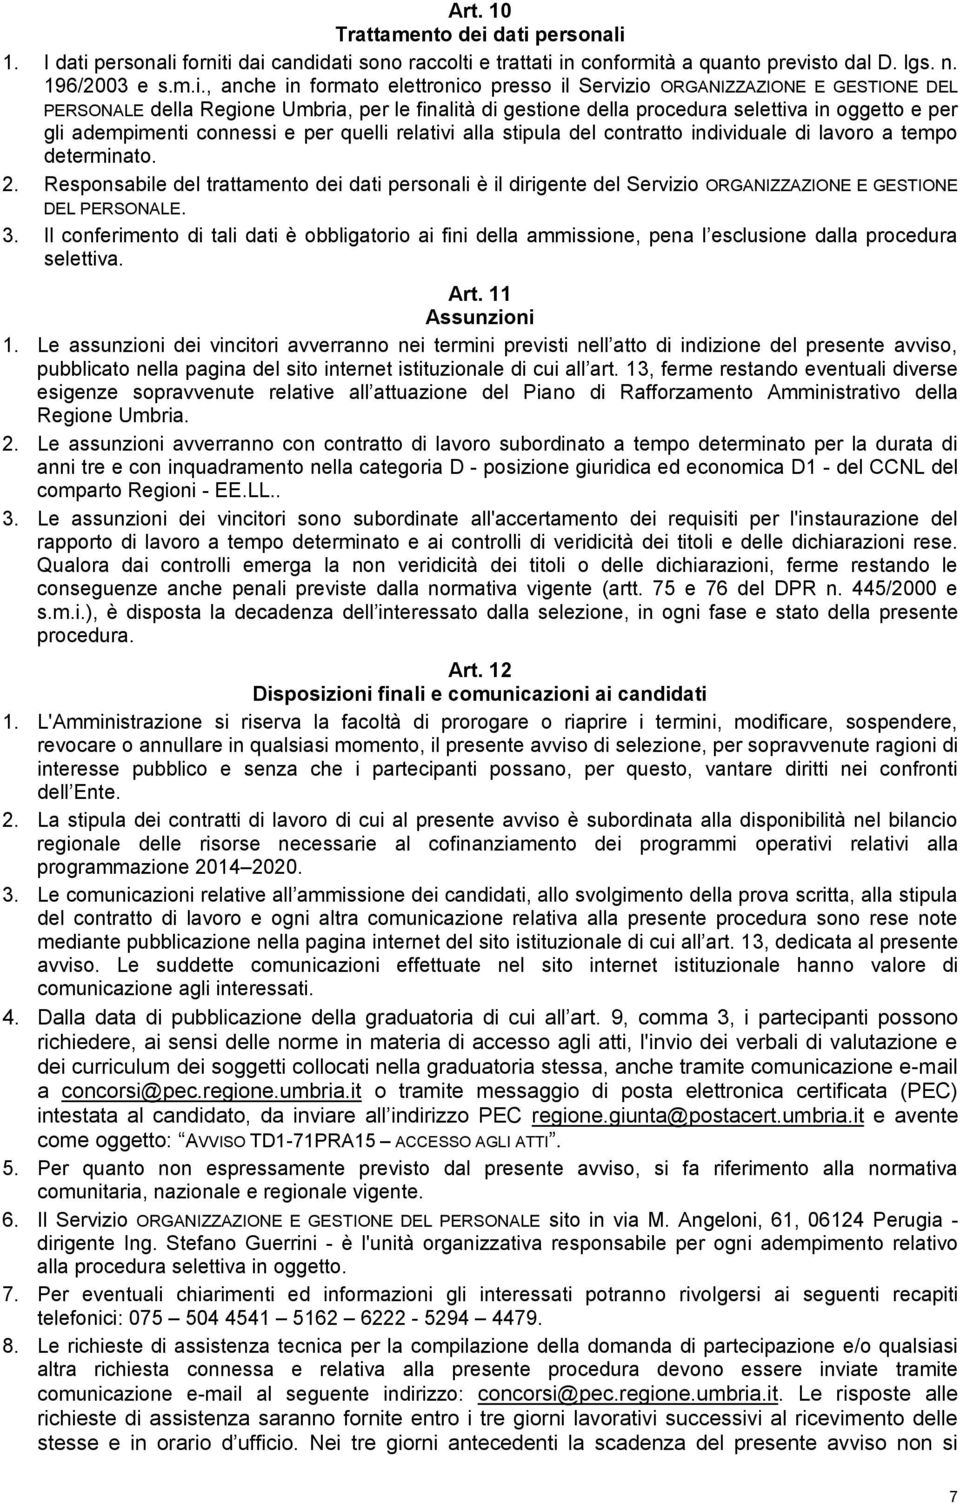 ORGANIZZAZIONE E GESTIONE DEL PERSONALE della Regione Umbria, per le finalità di gestione della procedura selettiva in oggetto e per gli adempimenti connessi e per quelli relativi alla stipula del